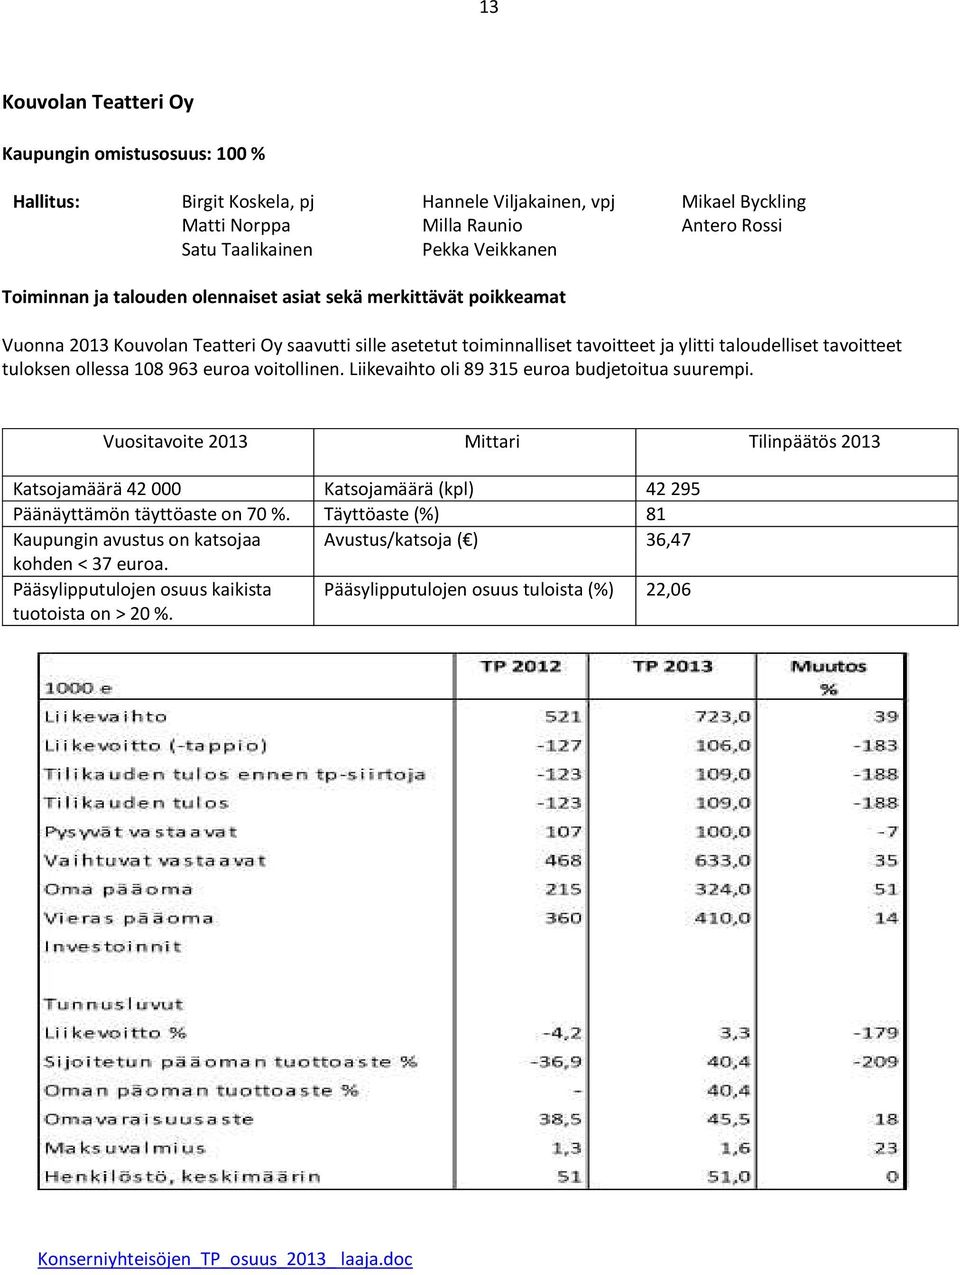 ollessa 108 963 euroa voitollinen. Liikevaihto oli 89 315 euroa budjetoitua suurempi.